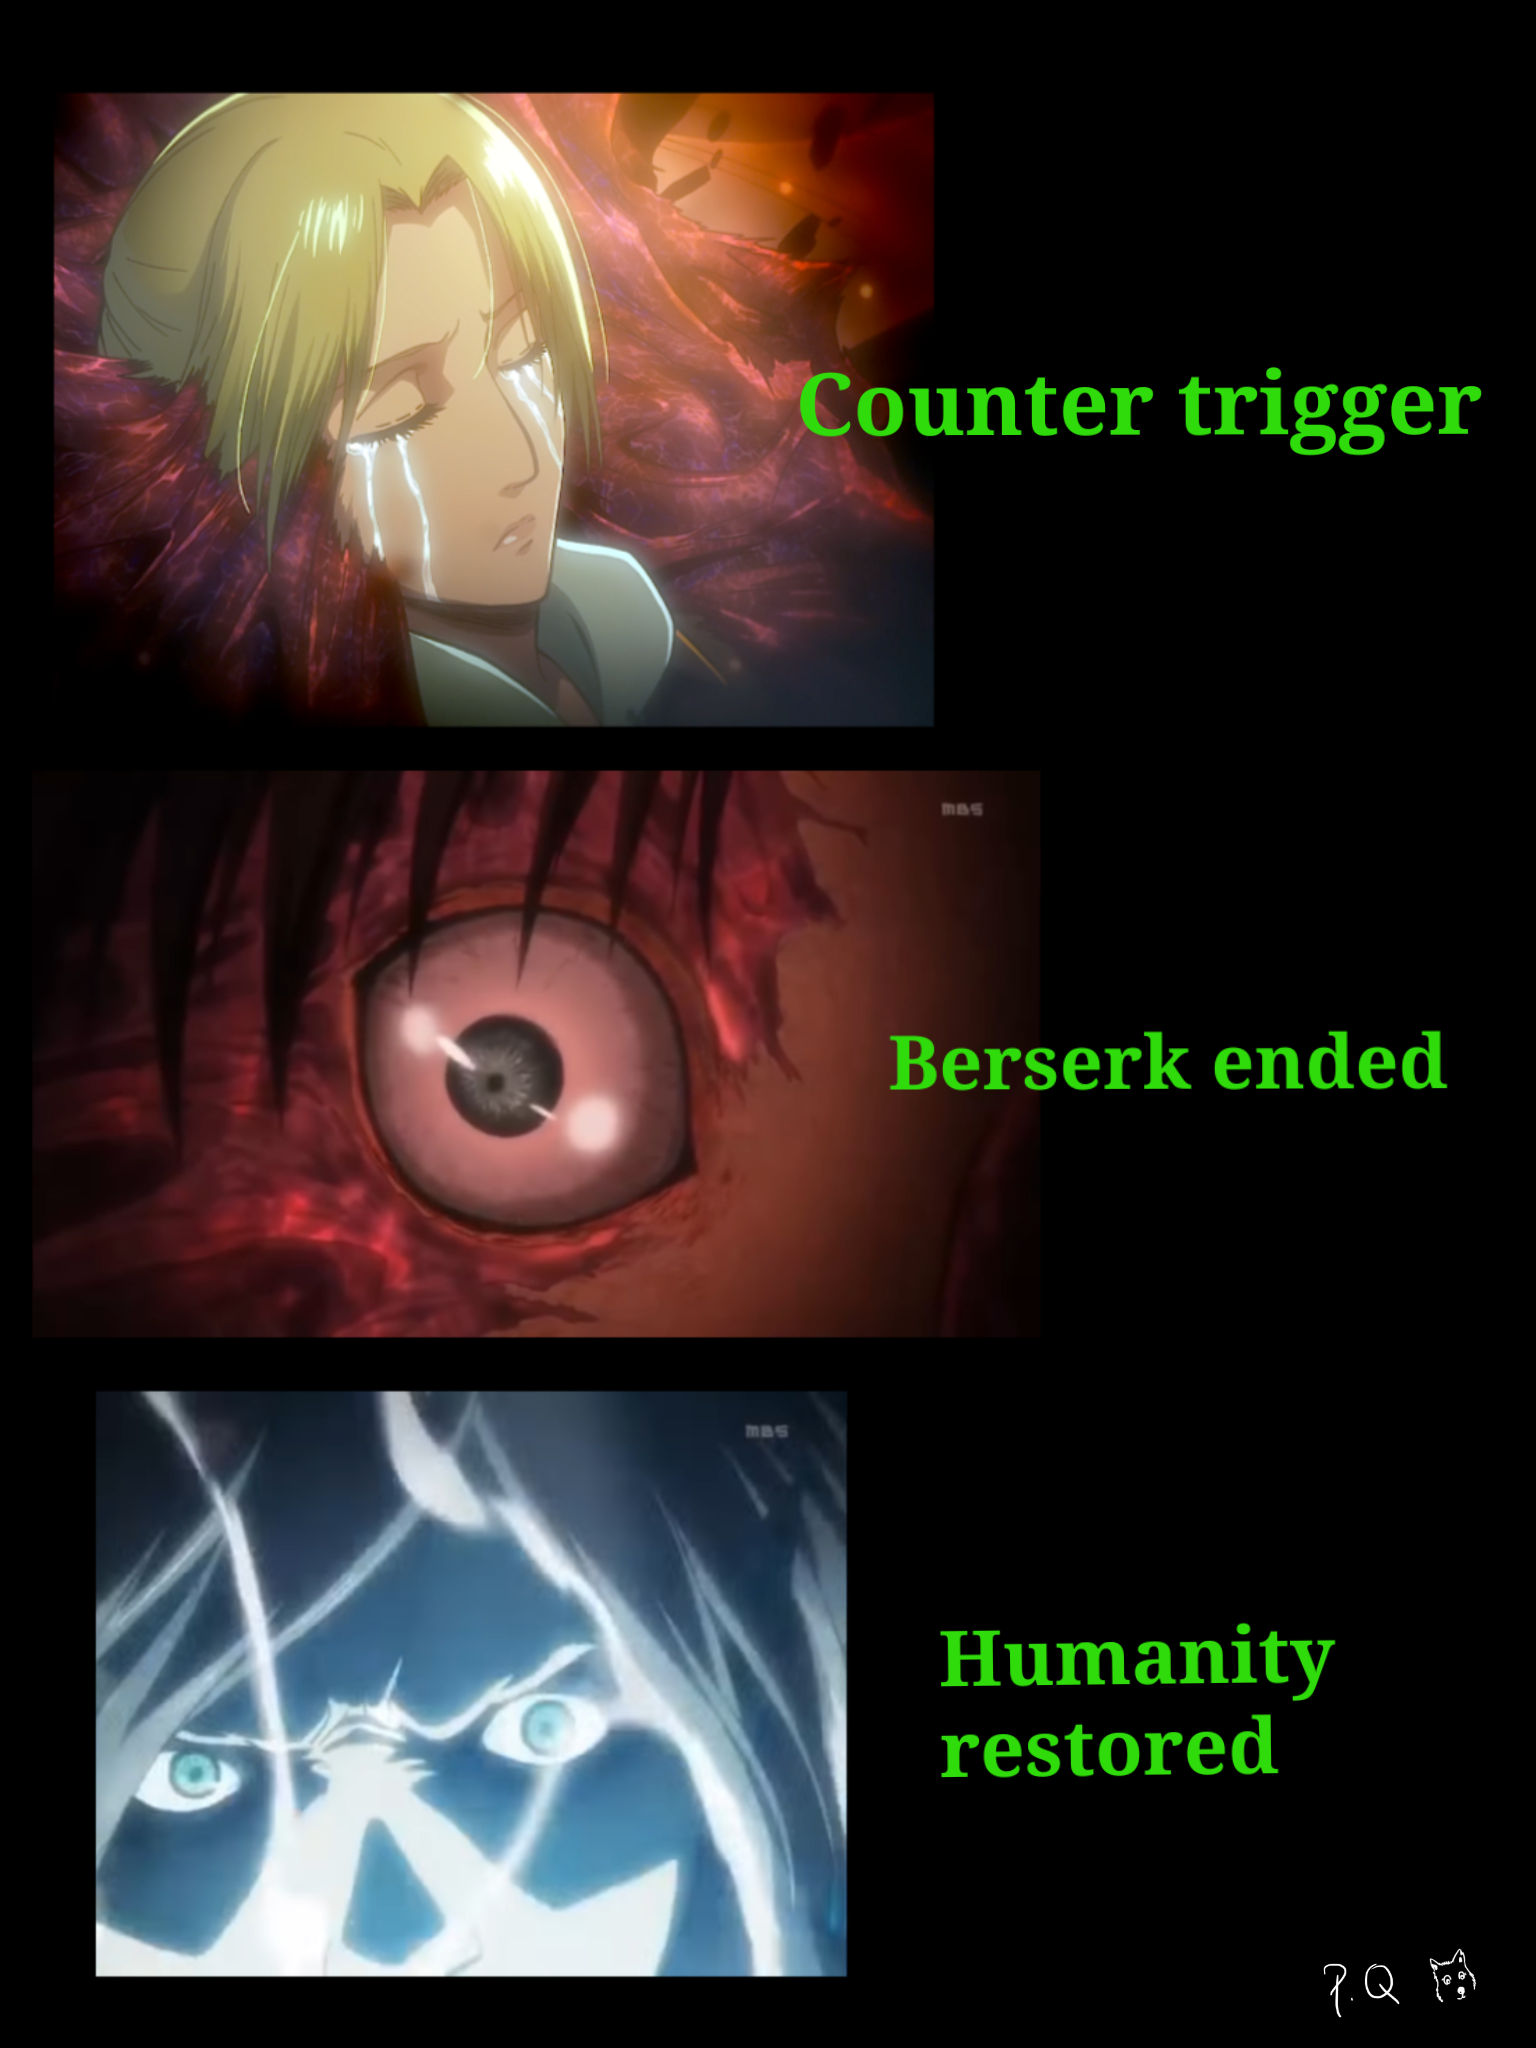 The cascade of events of Eren's Berserk mode during Battle